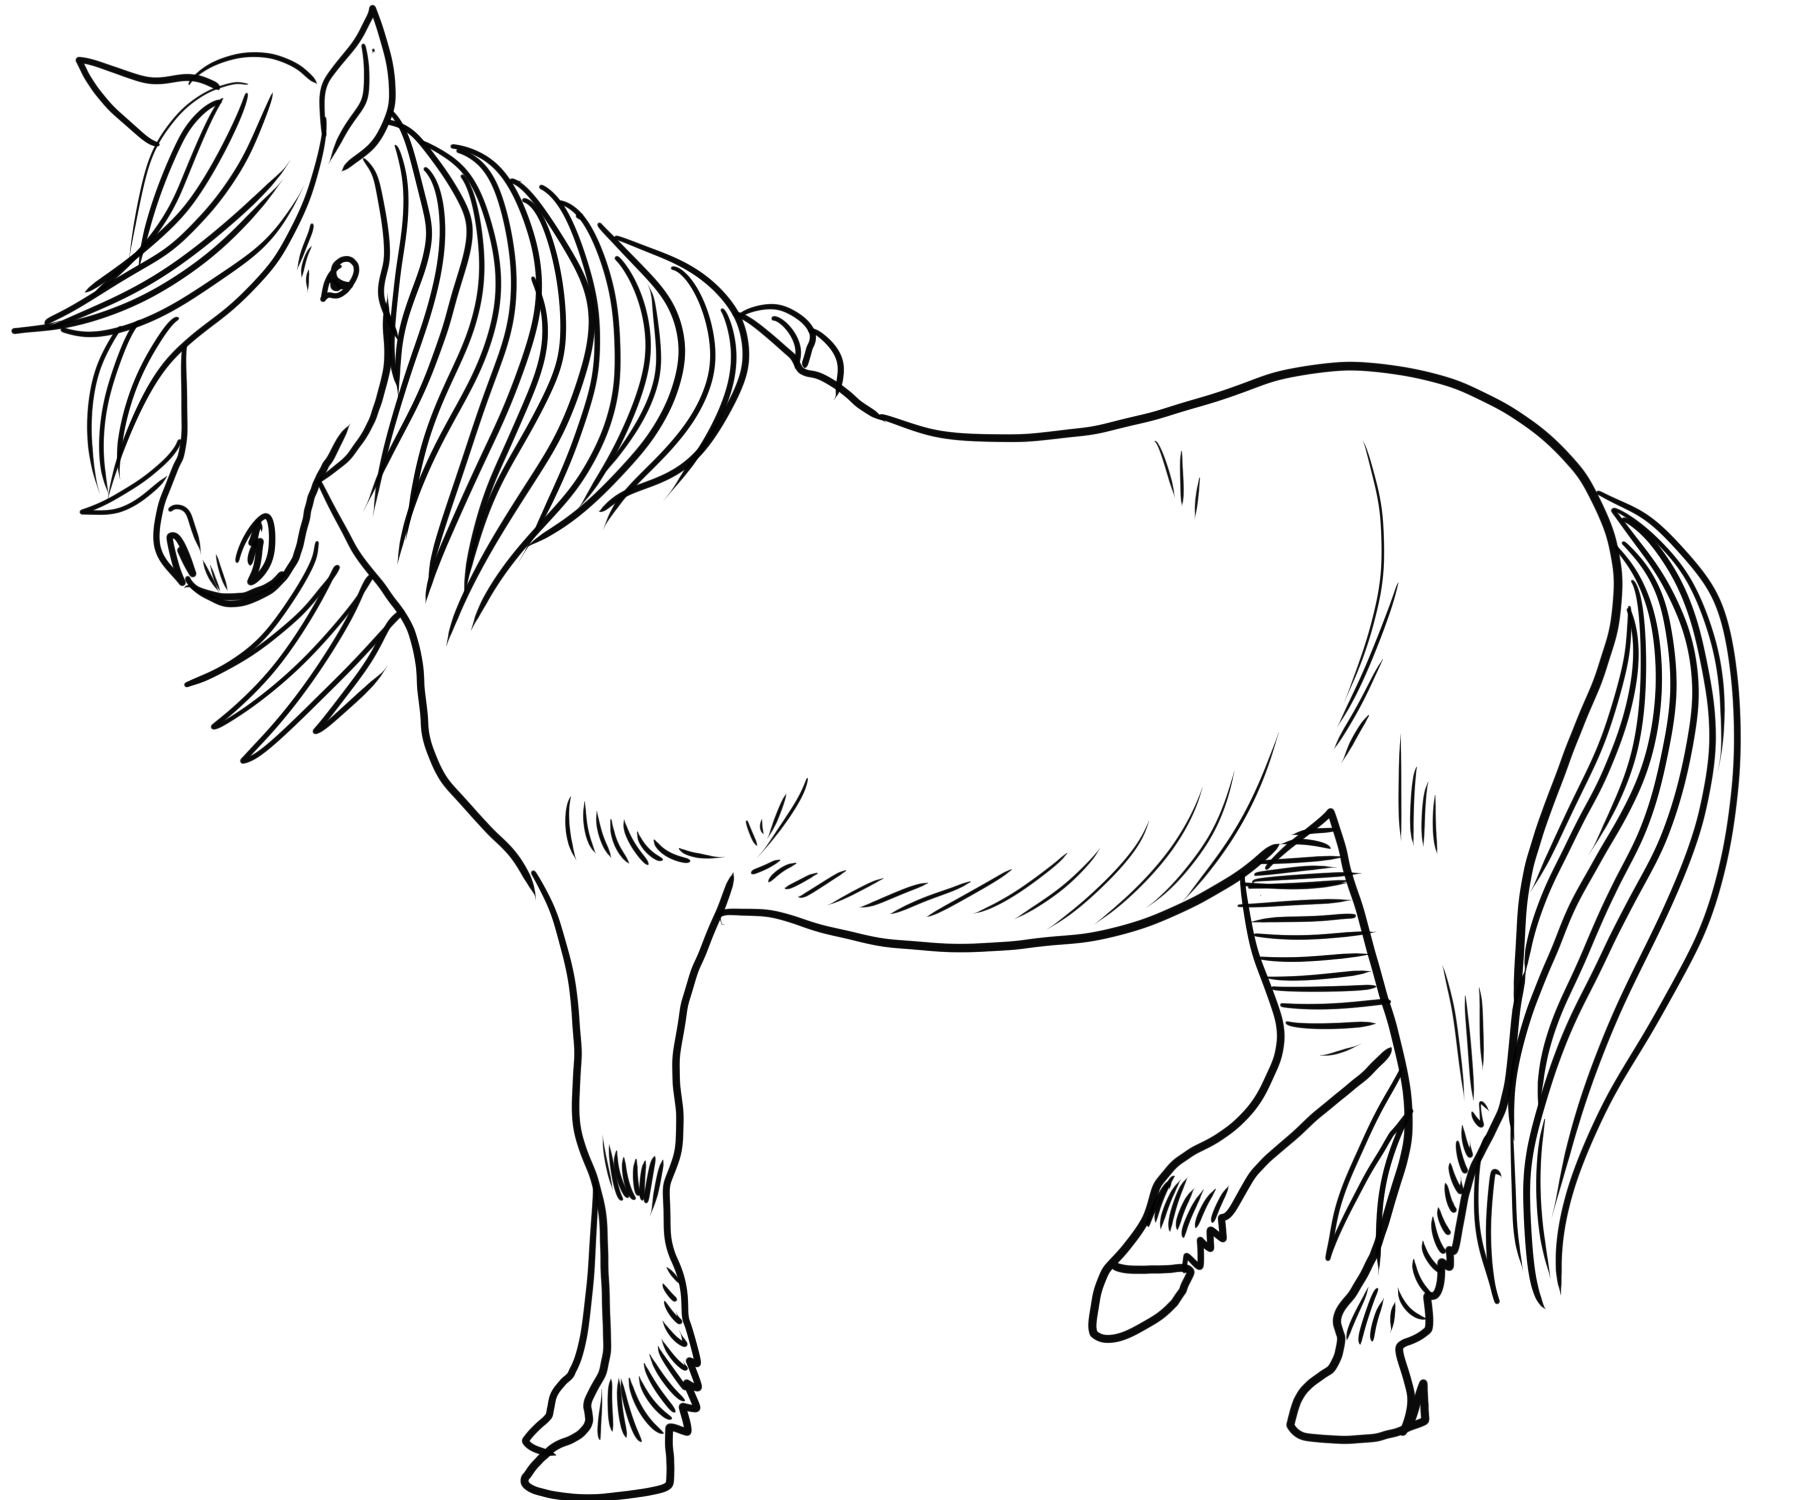 Disegno da colorare di cavallo islandese  